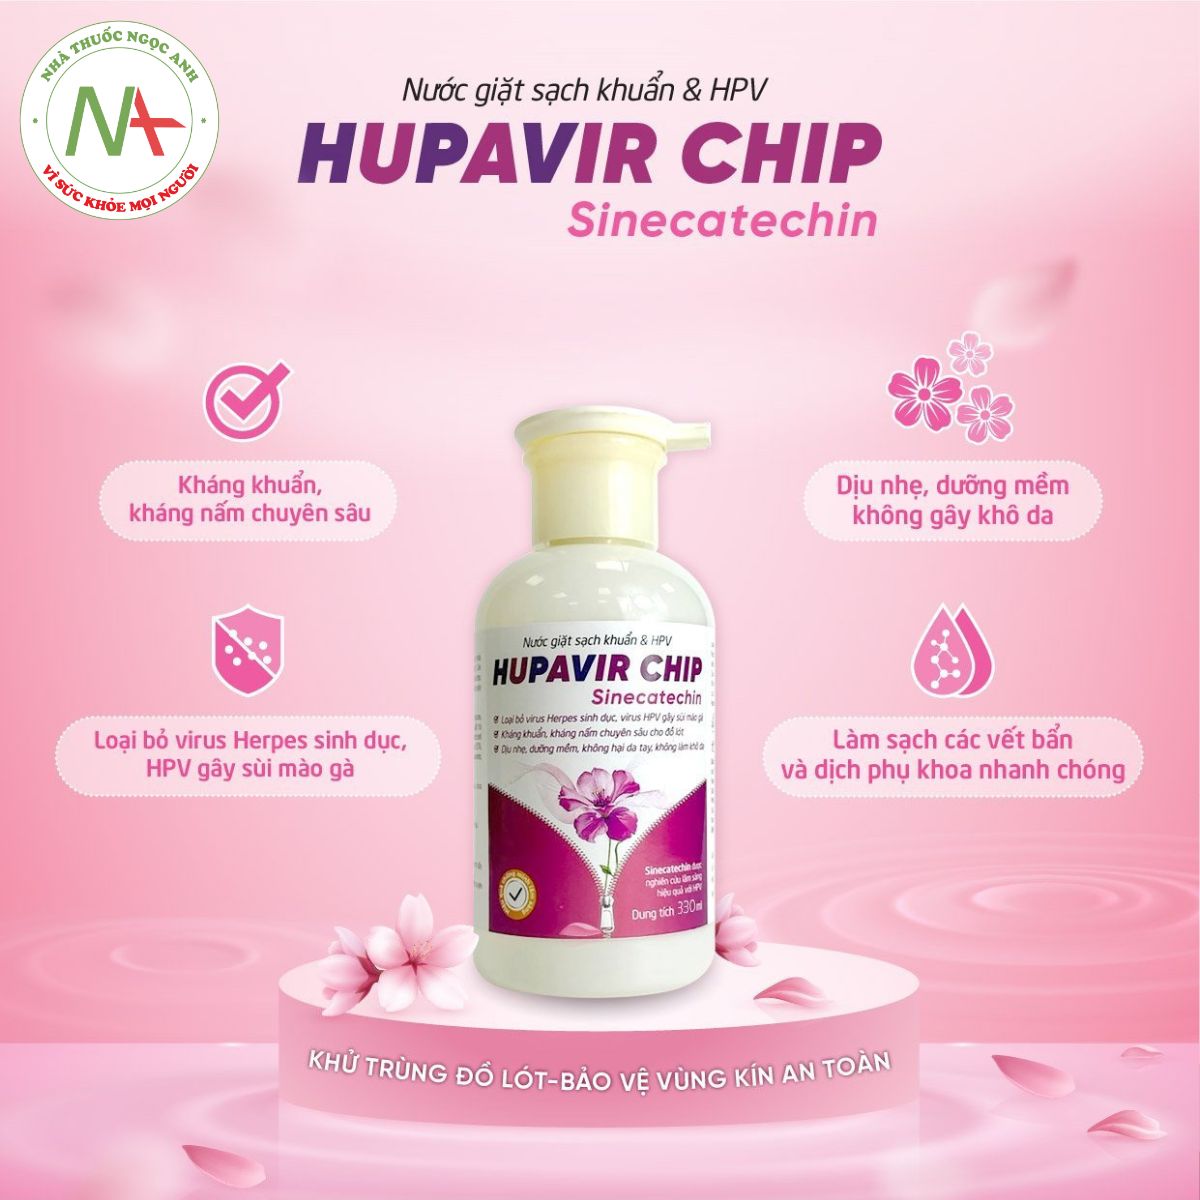 Hupavir Chip có công dụng gì?